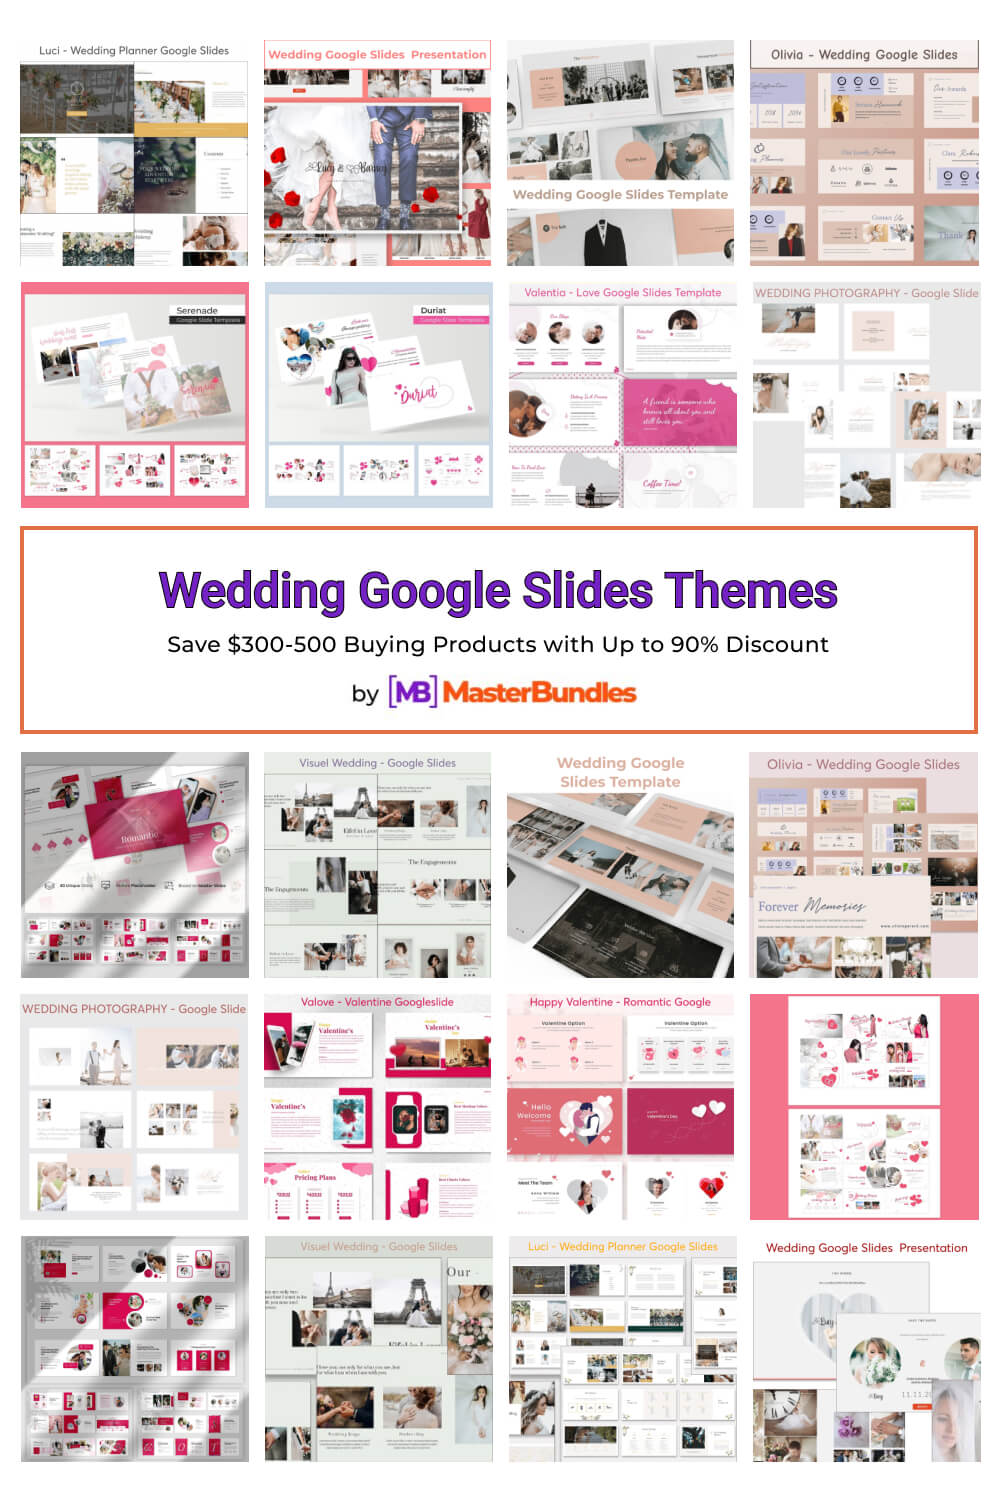 wedding google slides themes pinterest image.